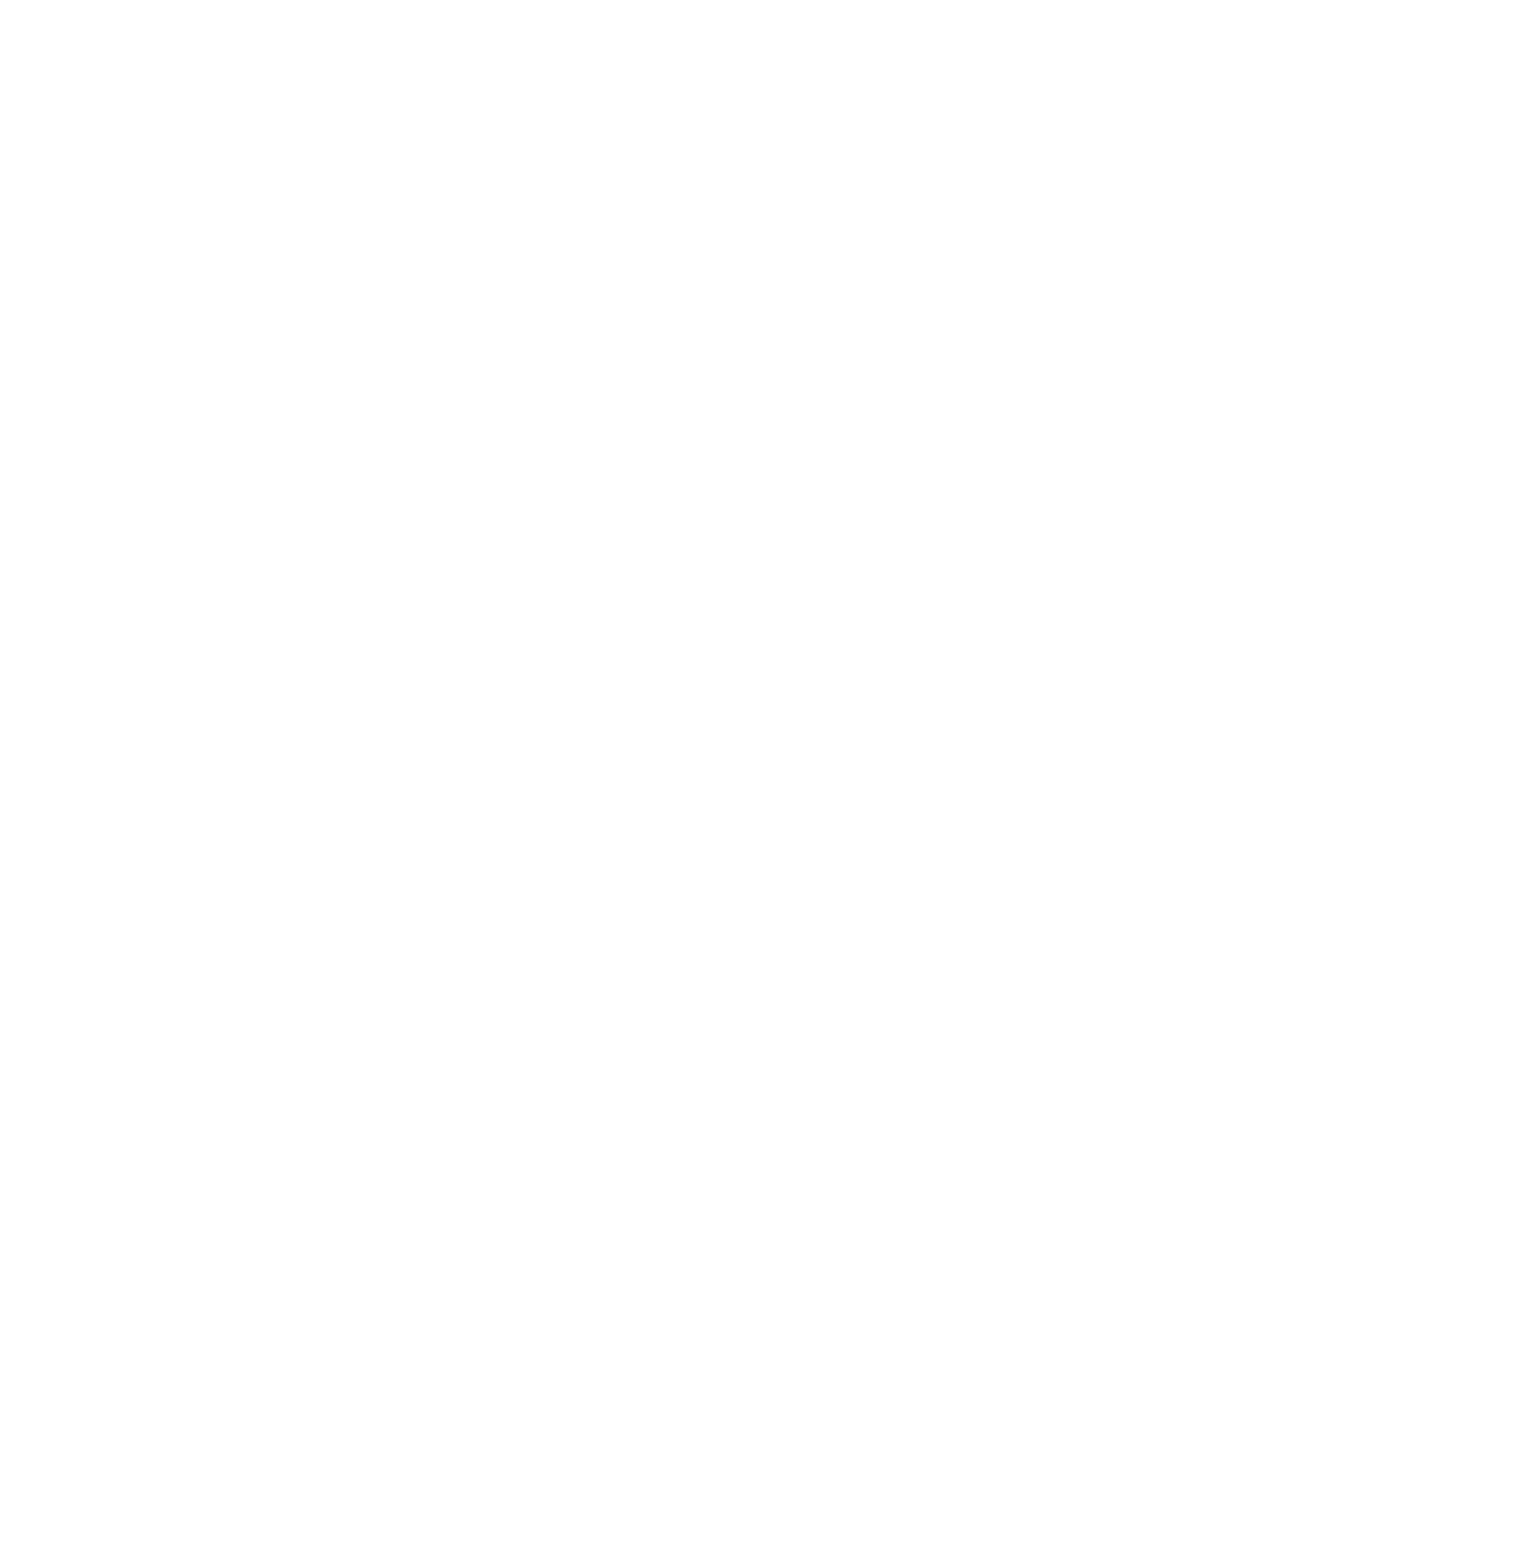 Sirius XM logo pour fonds sombres (PNG transparent)